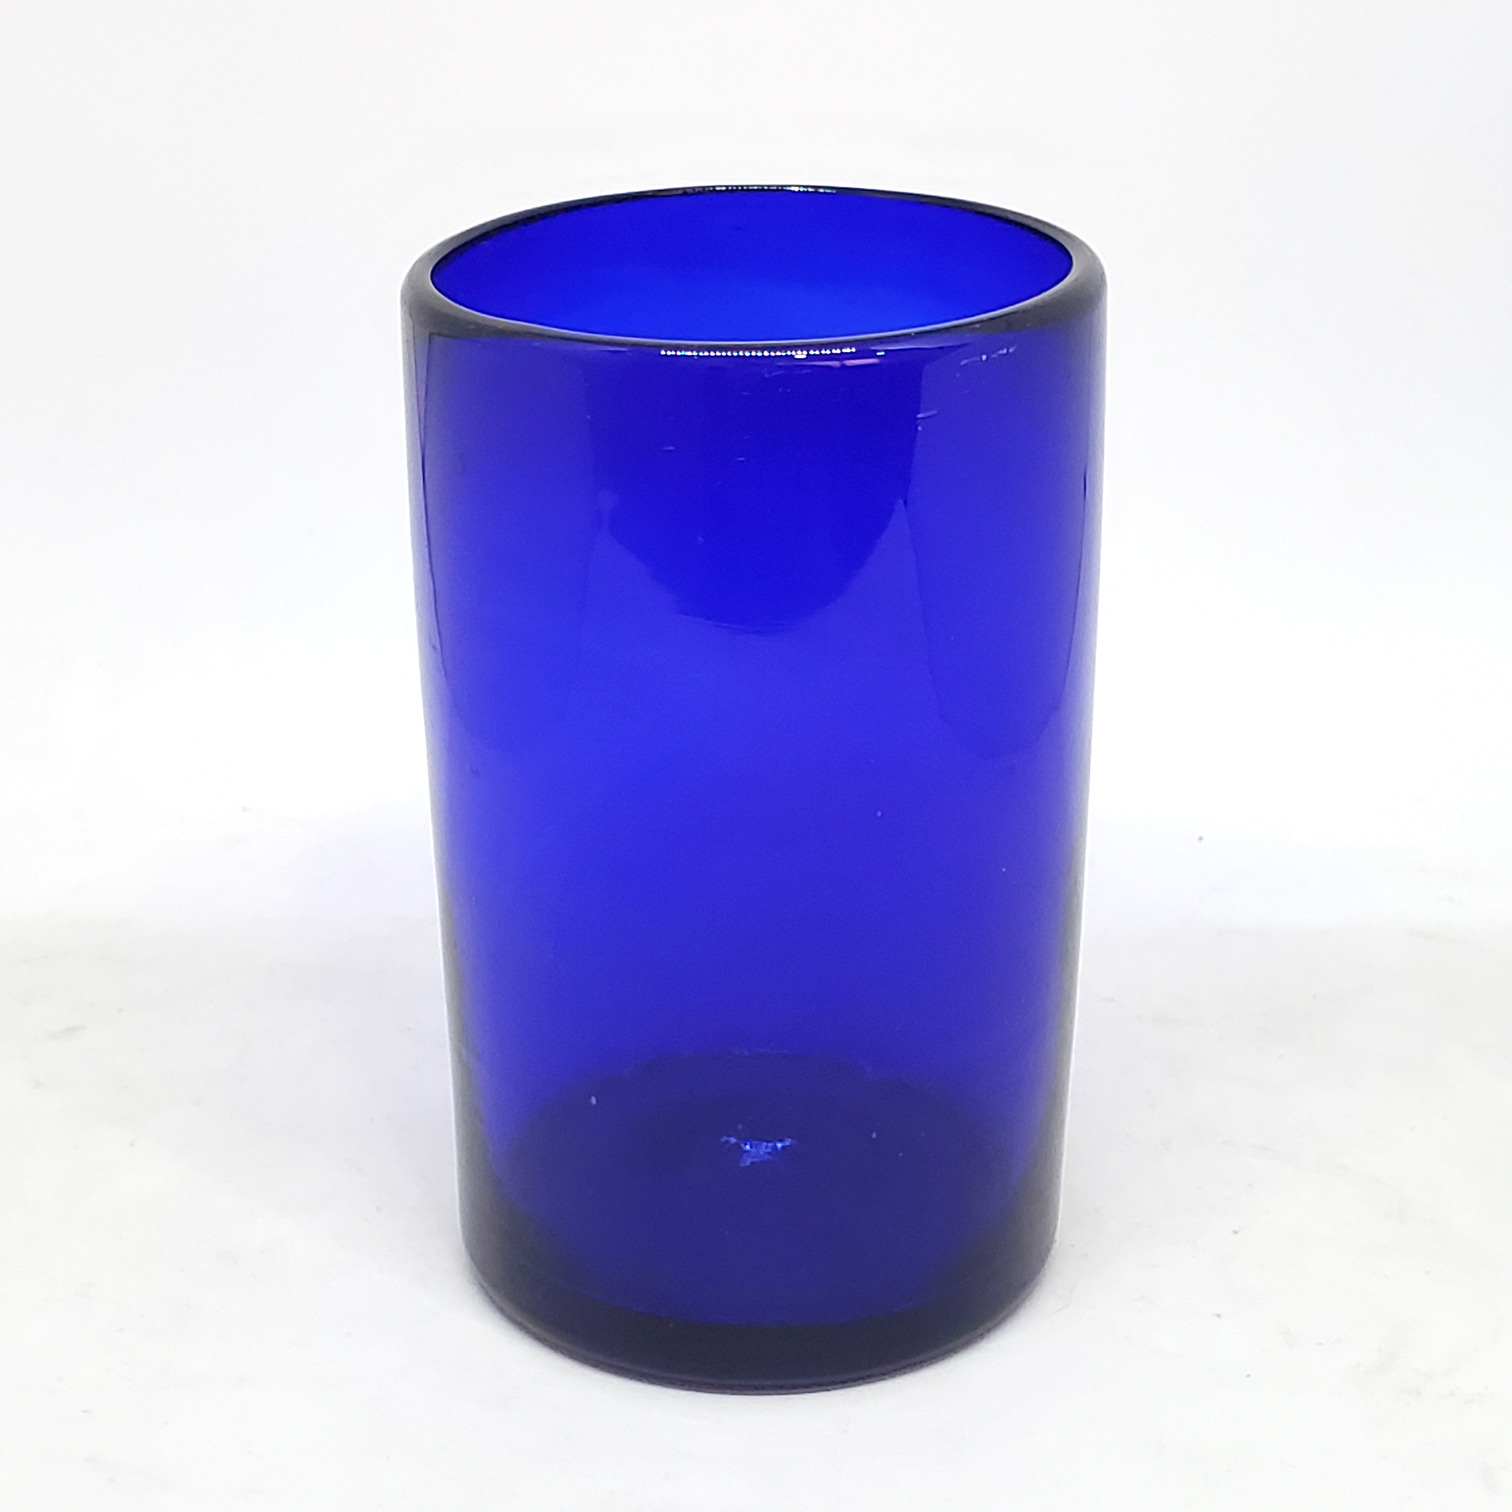 Ofertas / Juego de 6 vasos grandes color azul cobalto / �stos artesanales vasos le dar�n un toque cl�sico a su bebida favorita.